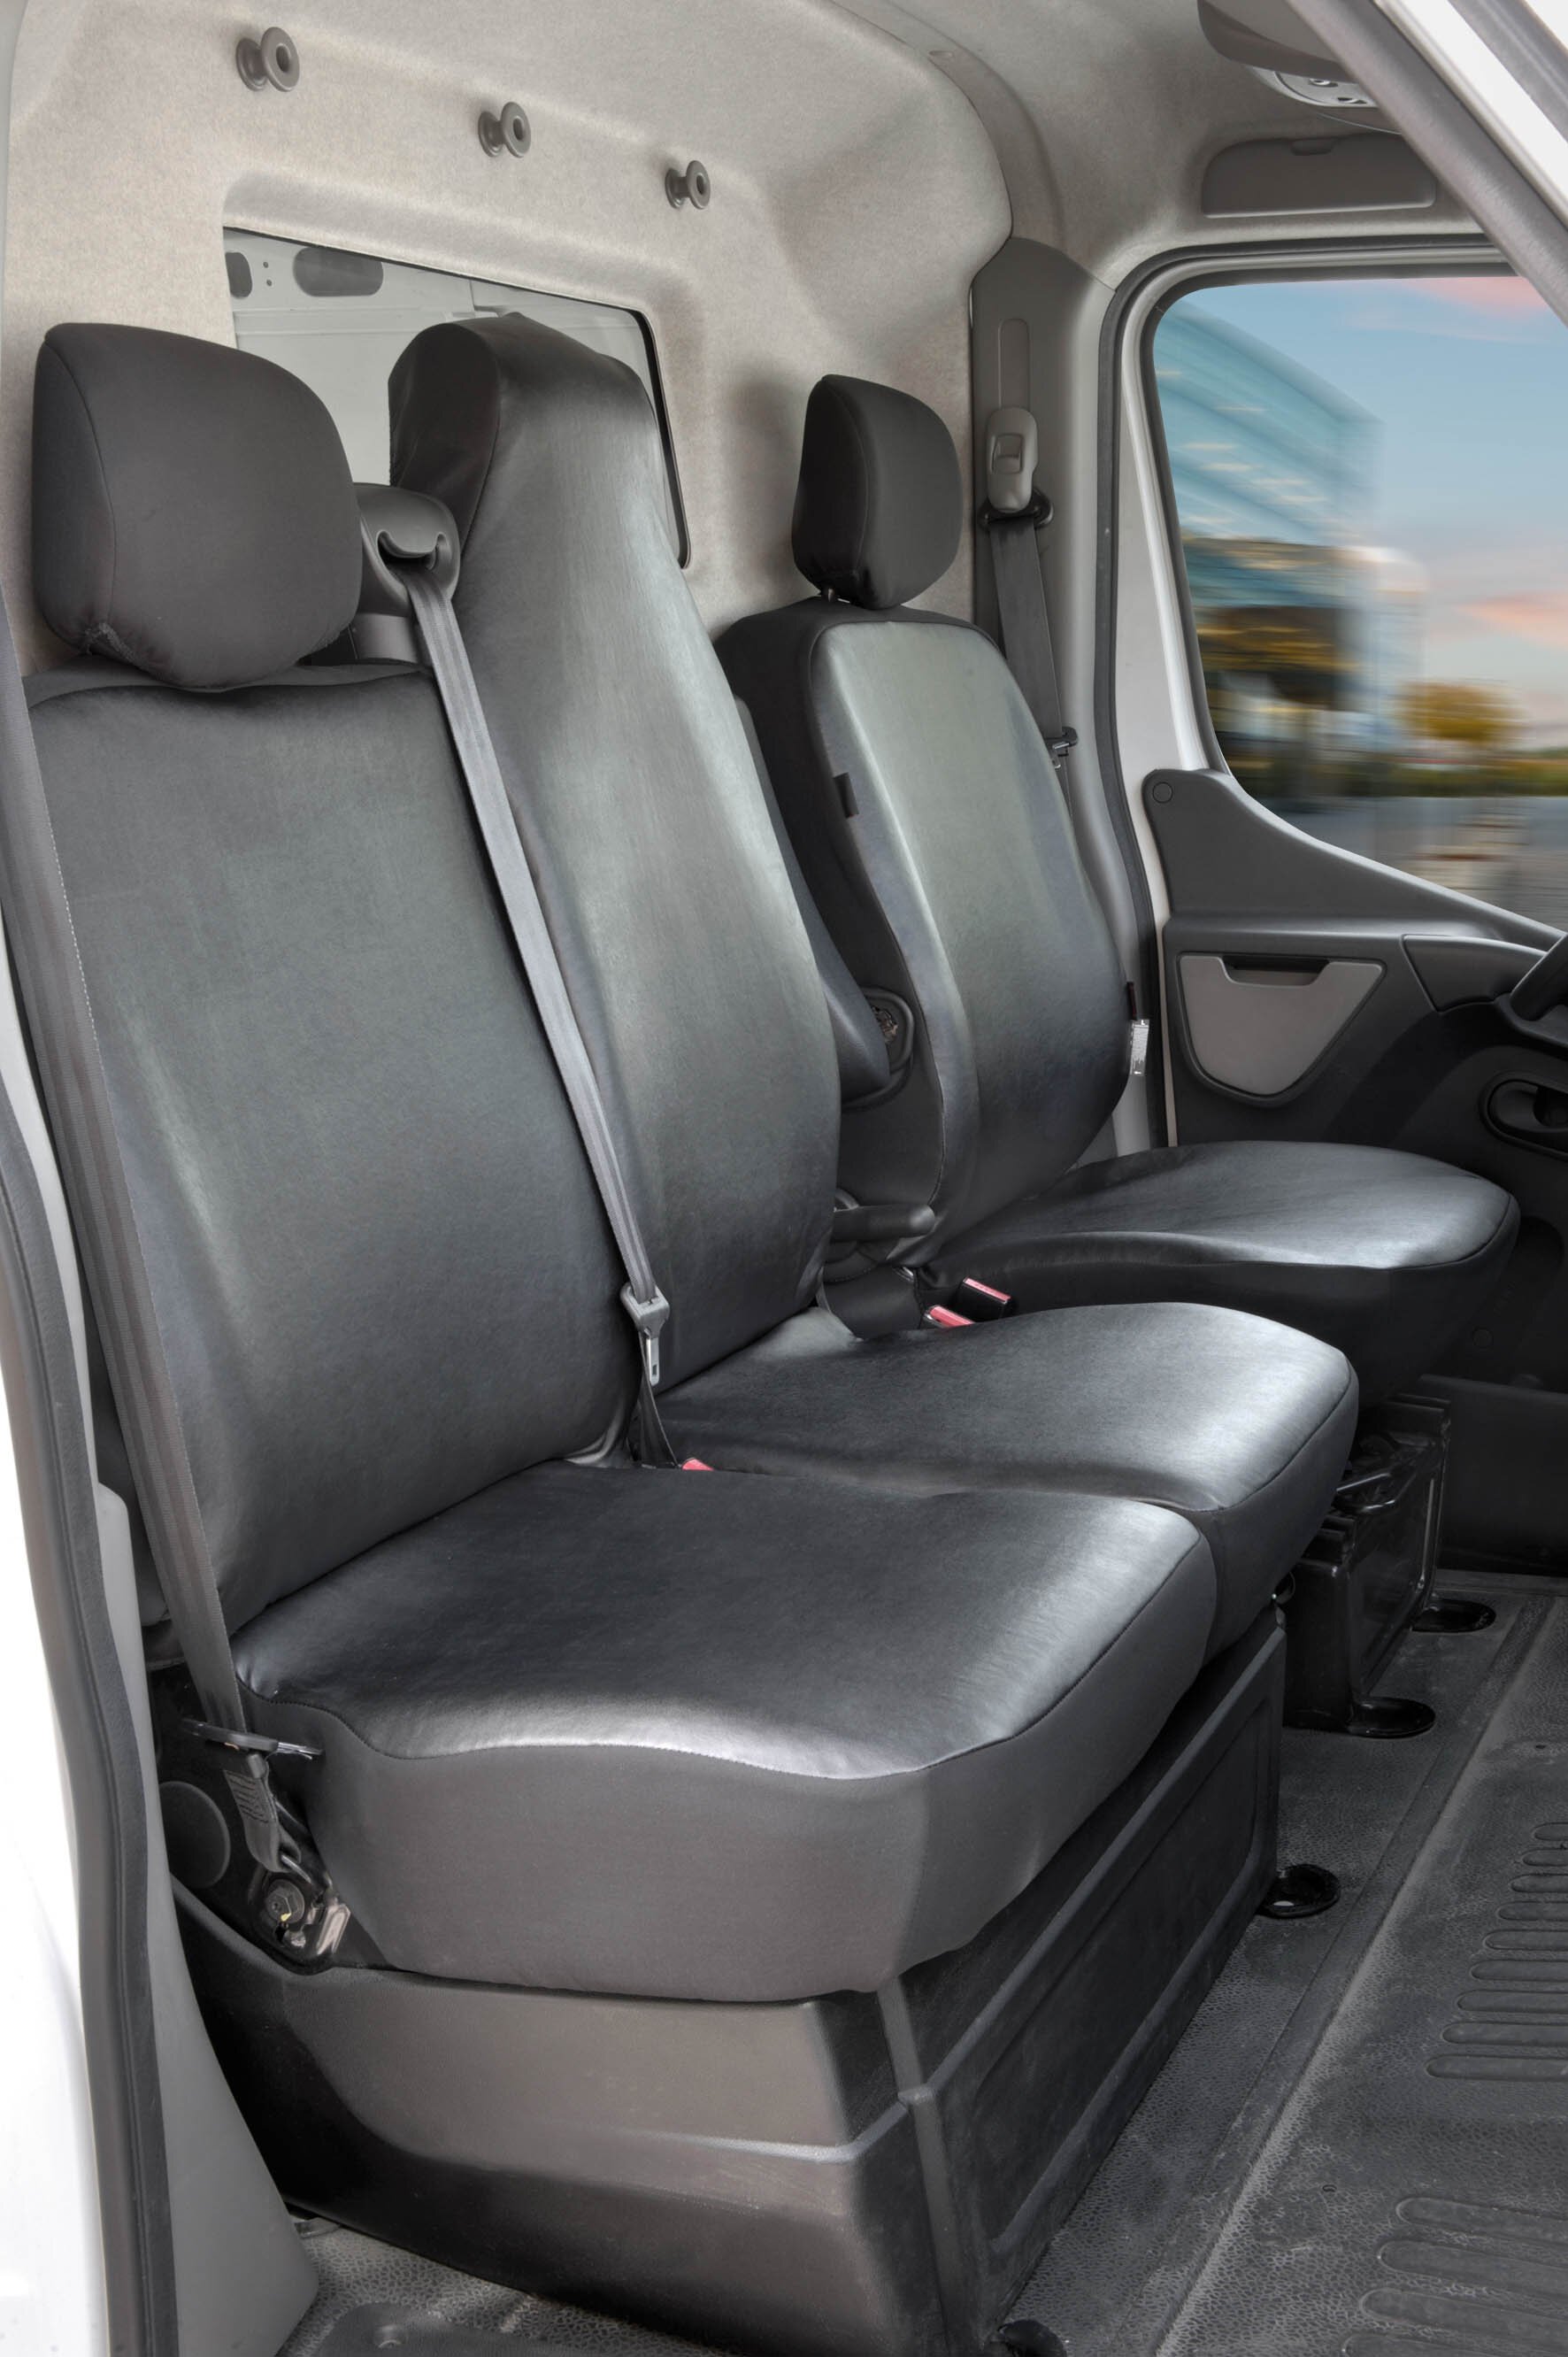 Passform Sitzbezug aus Kunstleder für Opel Movano, Renault Master, Nissan Interstar, Einzelsitzbezug vorne und Doppelbankbezug